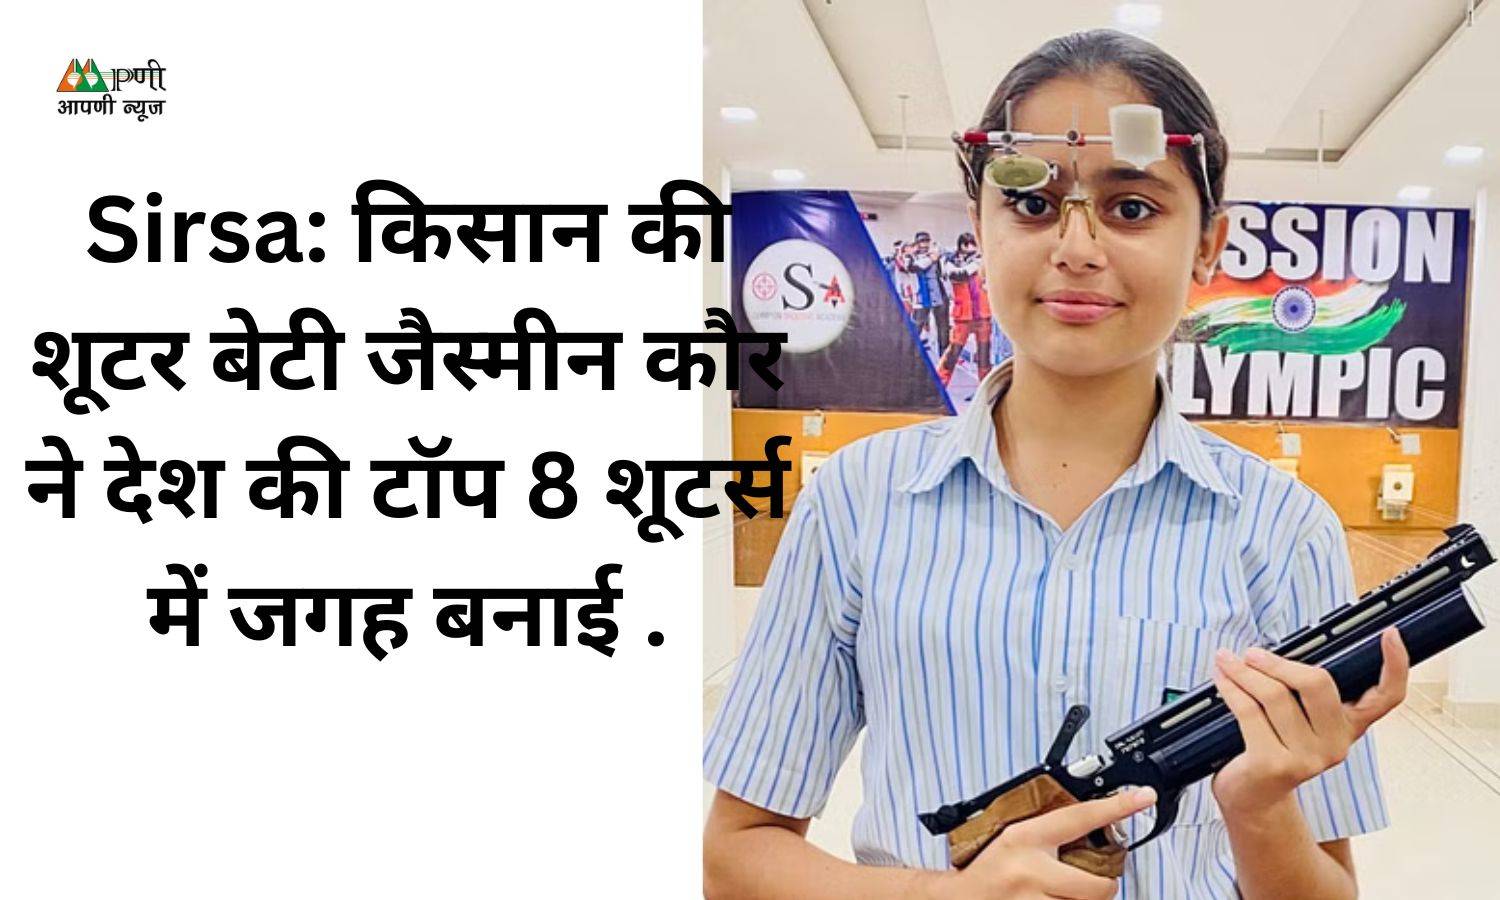 Sirsa: किसान की शूटर बेटी जैस्मीन कौर ने देश की टॉप 8 शूटर्स में जगह बनाई .